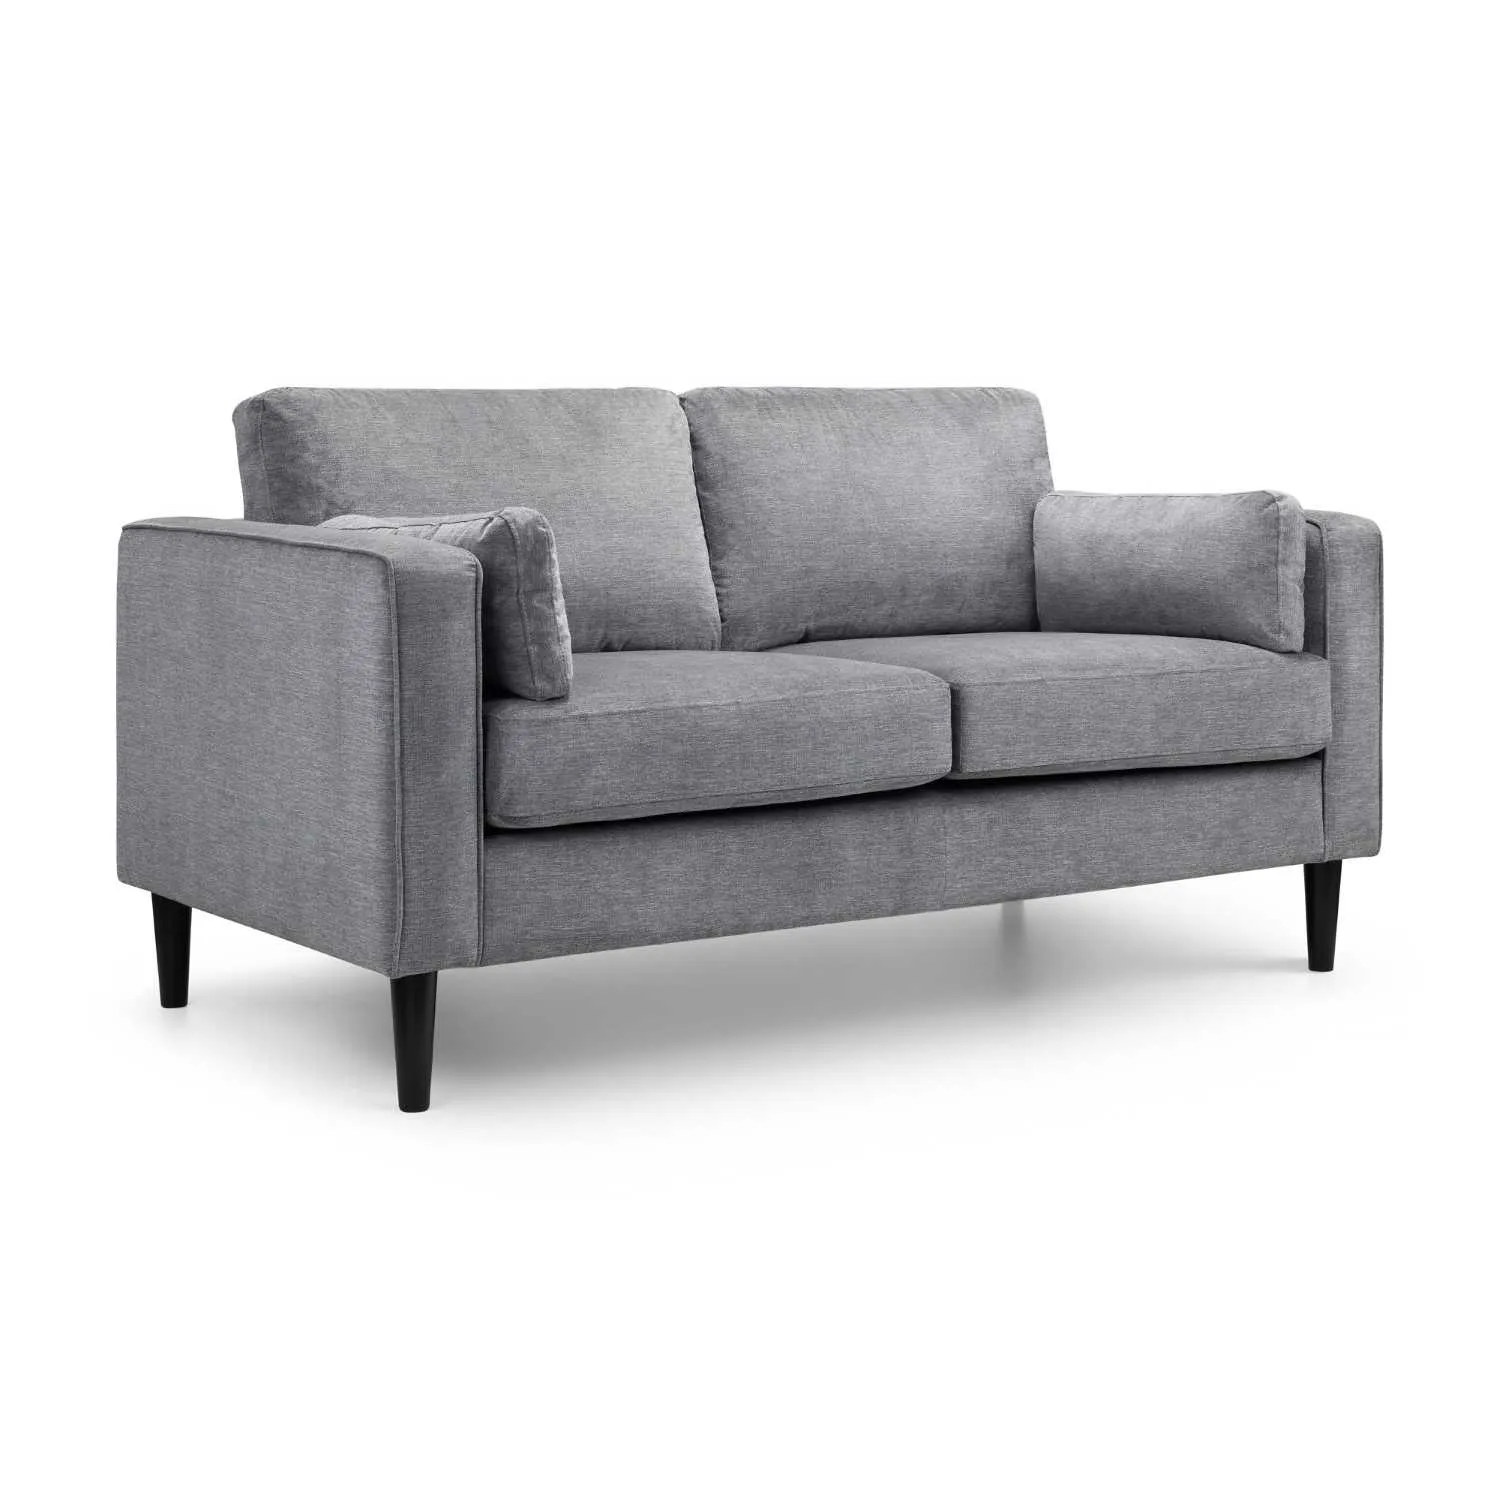 Dark Grey Chenille Fabric Upholstery 2 Seater Sofa Padded Framed